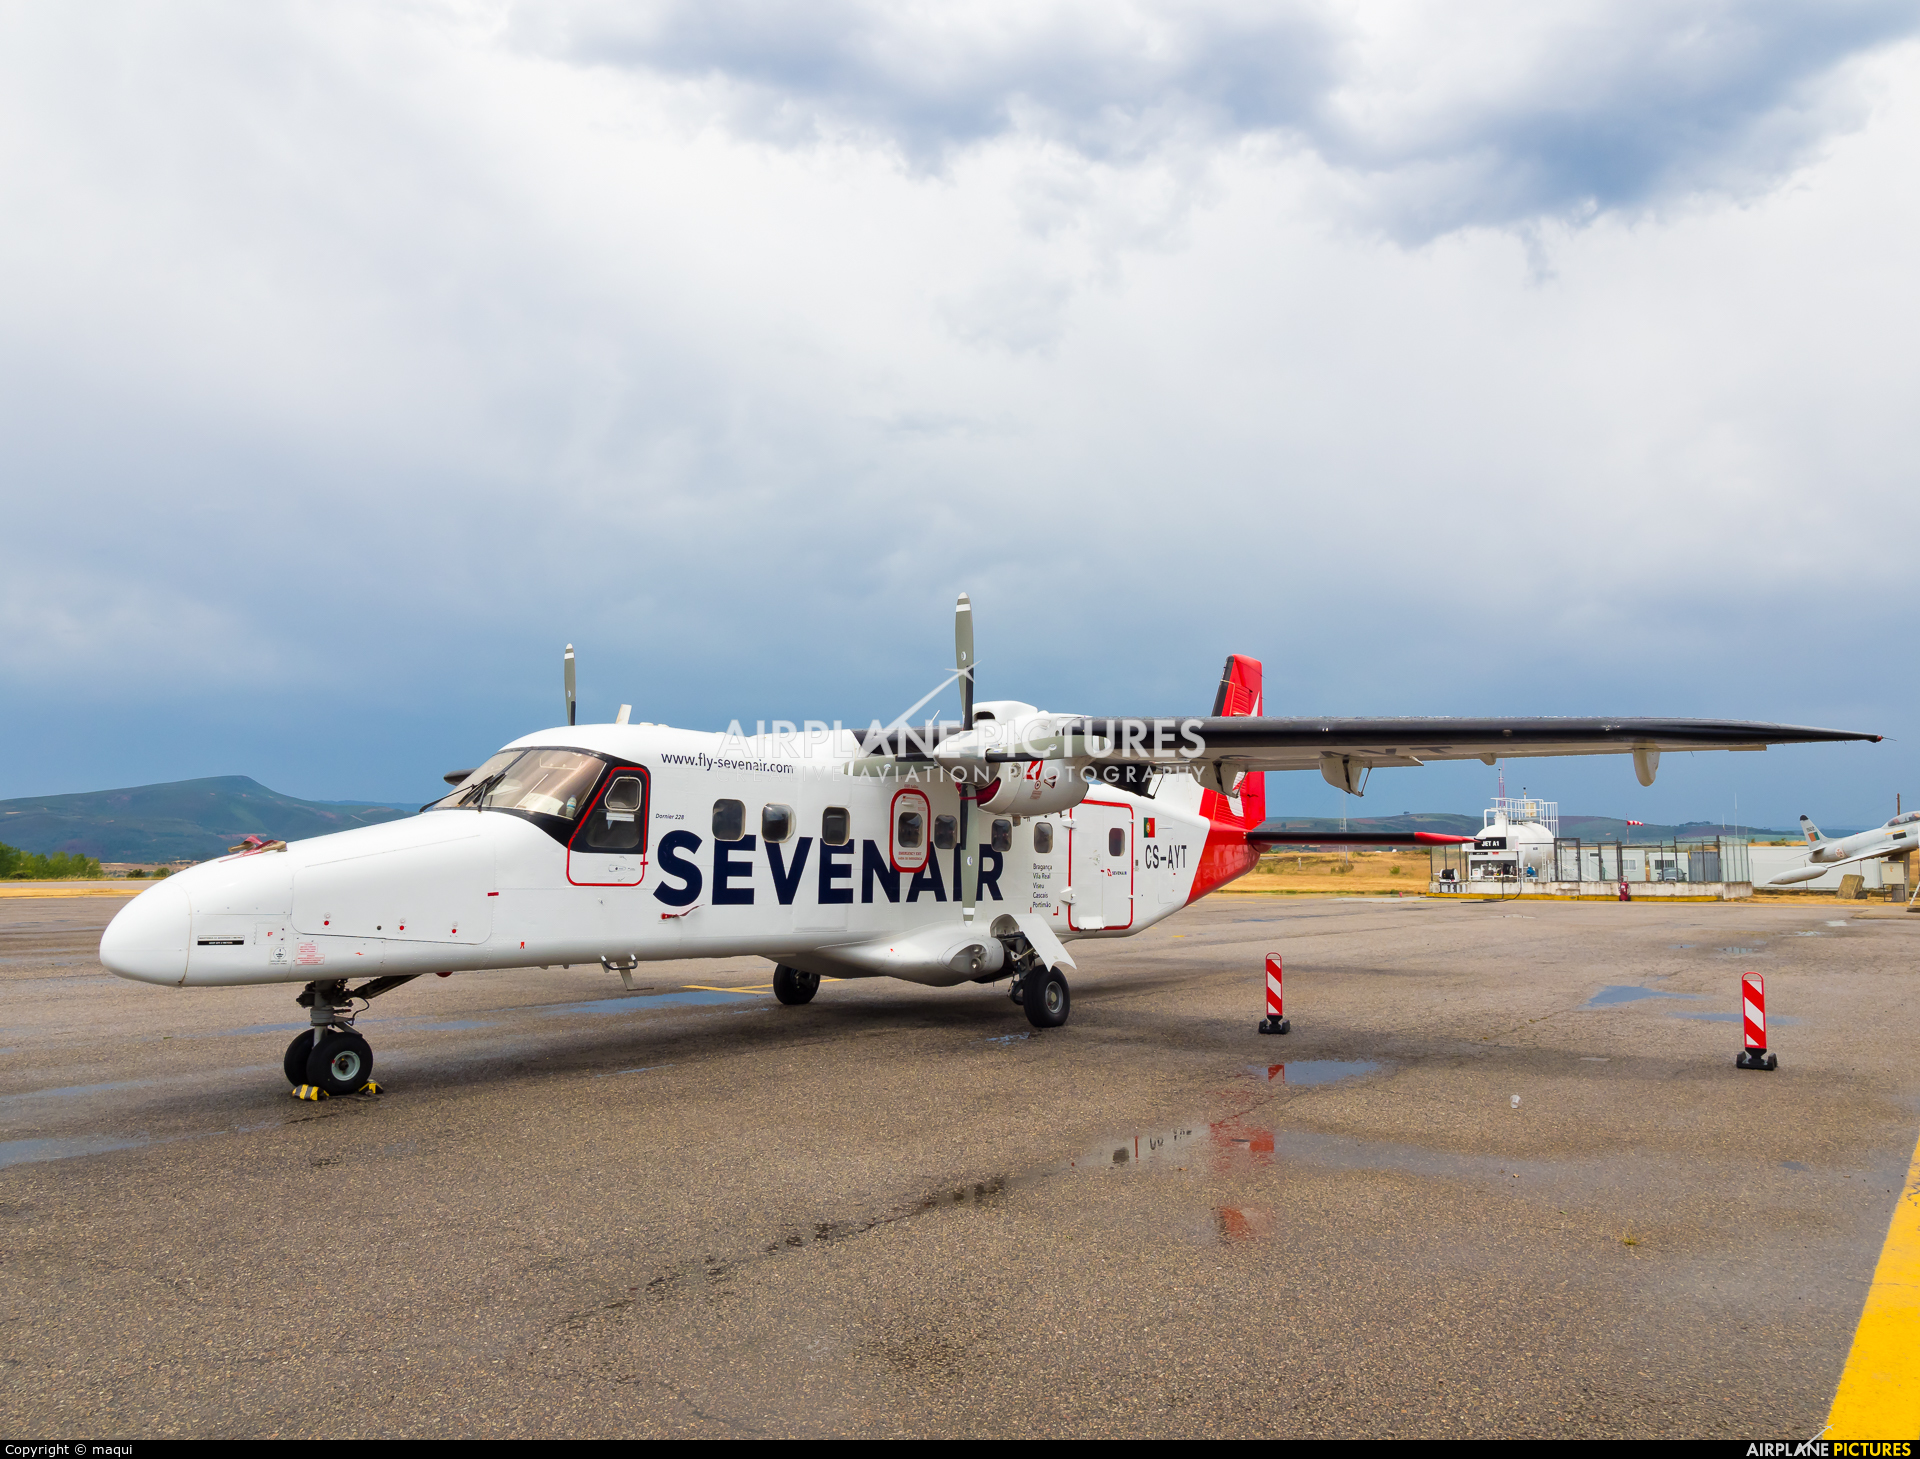 Sevenair CS-AYT aircraft at Bragança